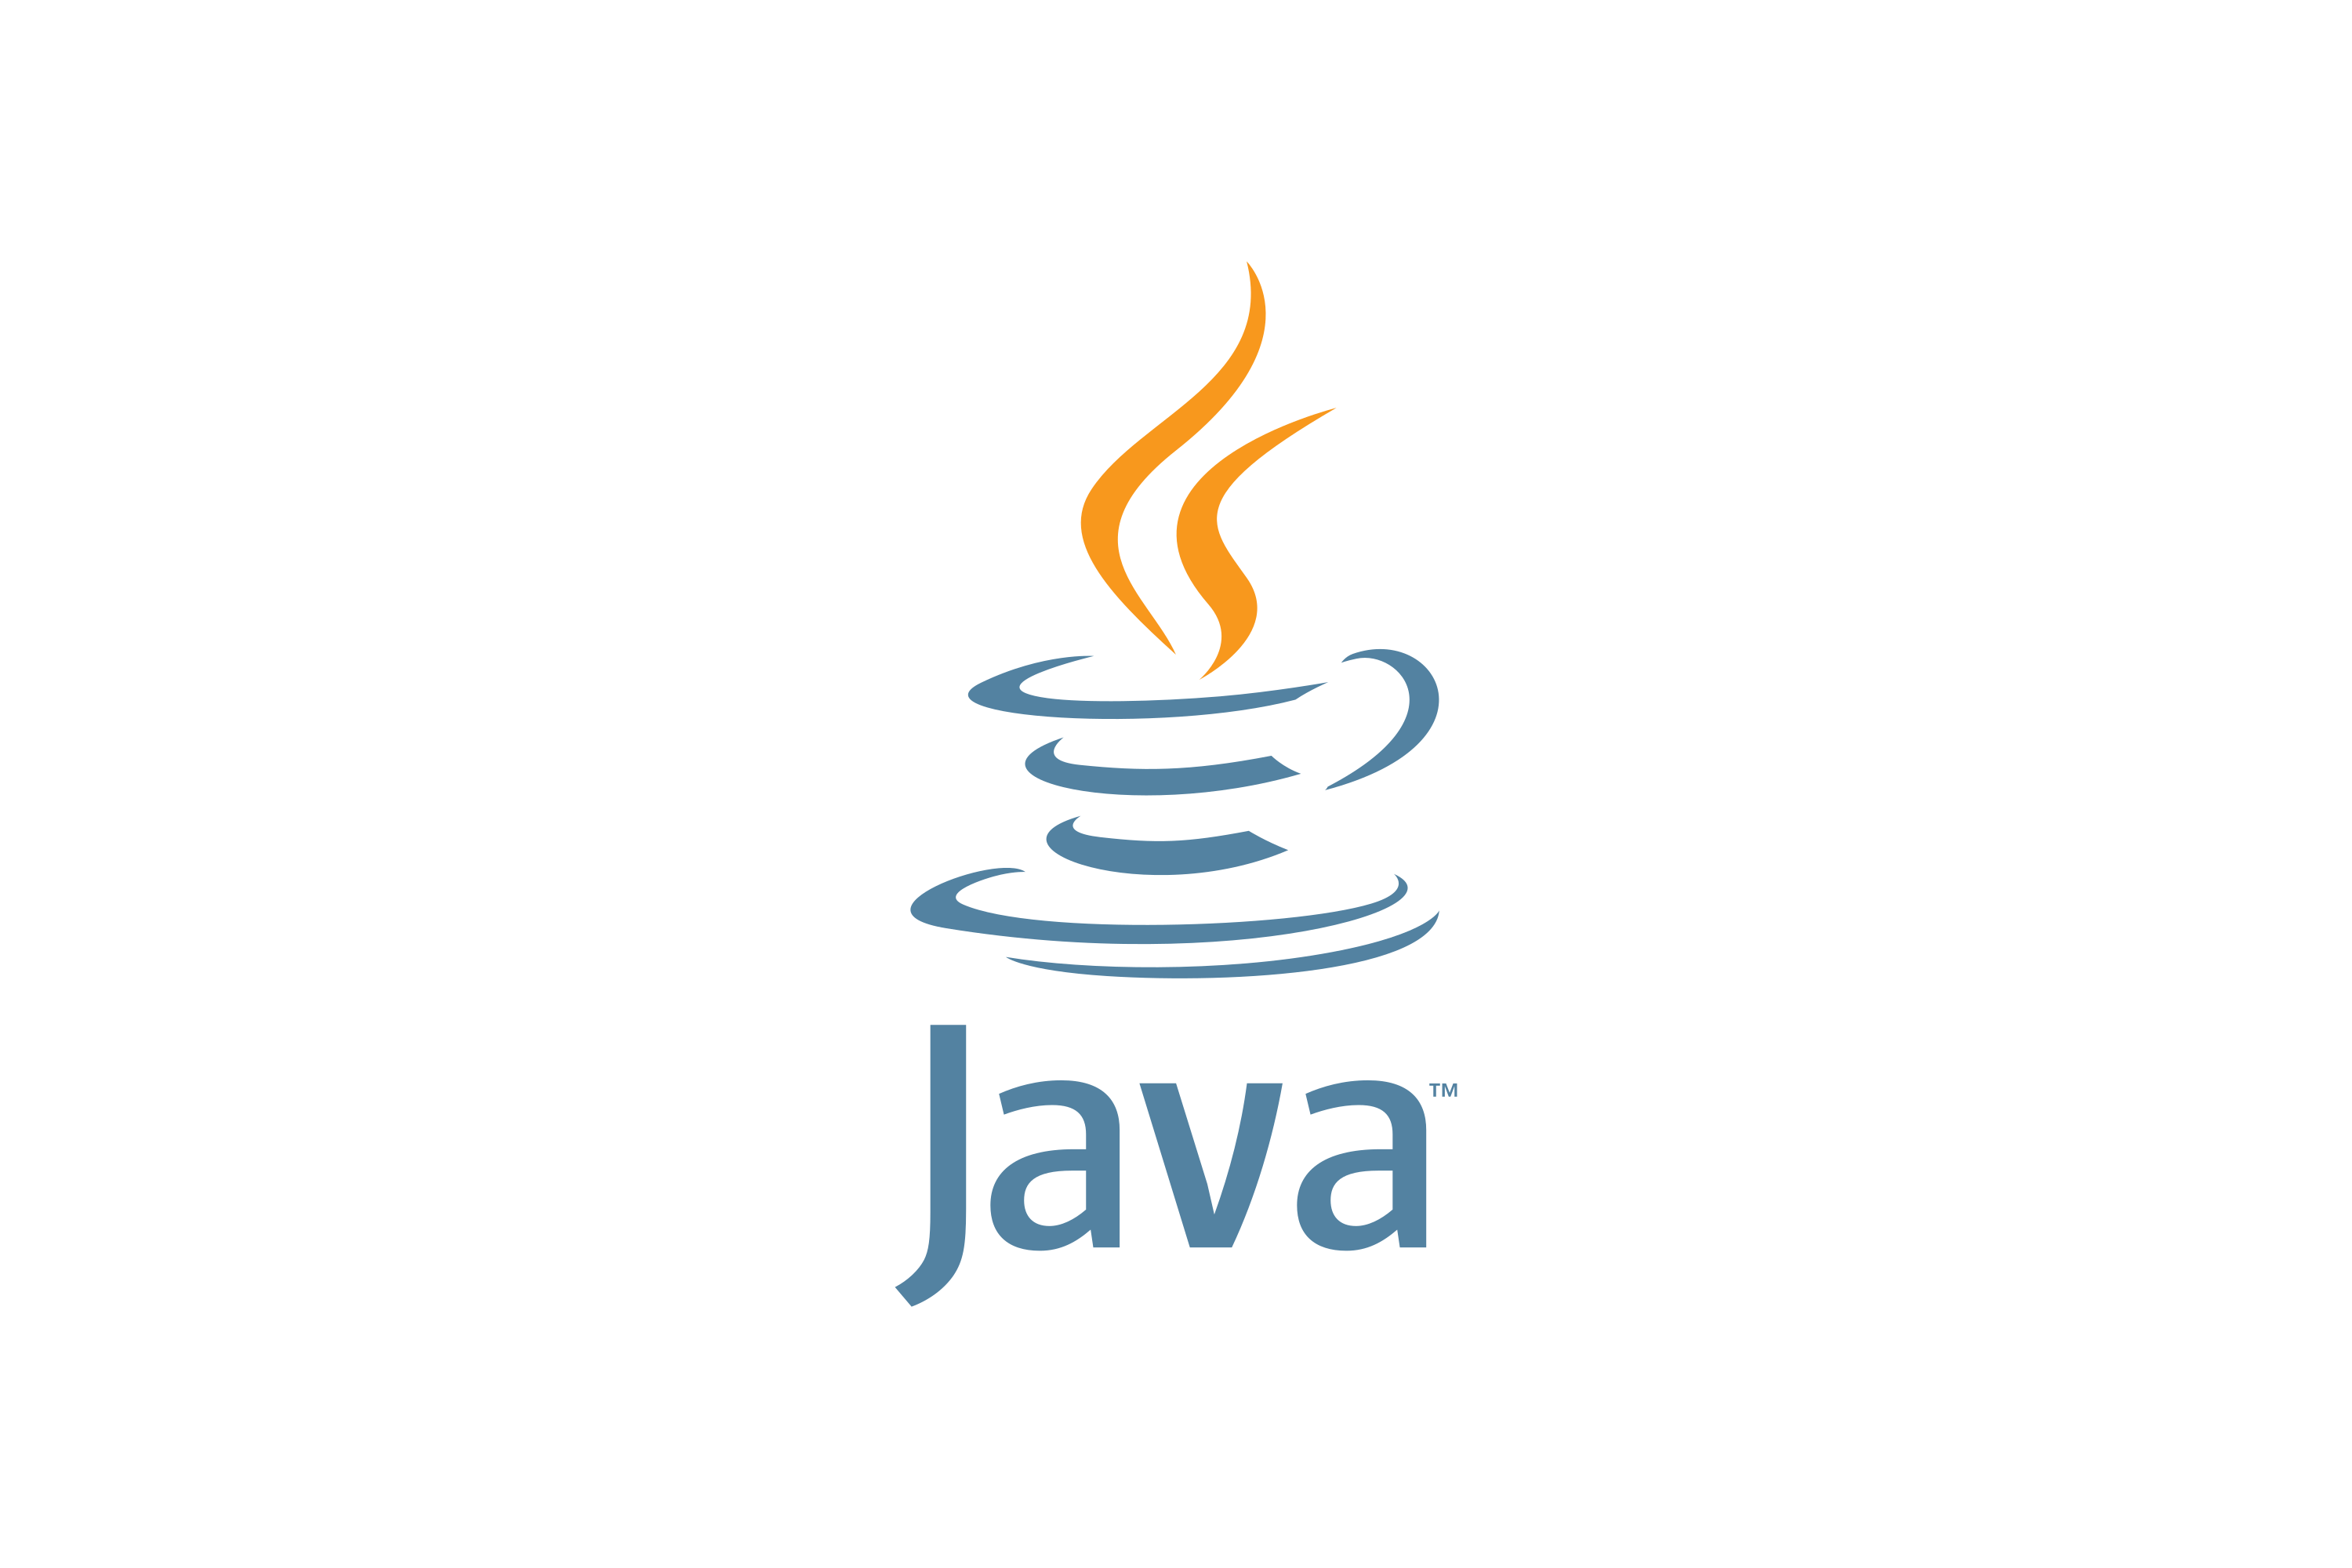 Jvaязык программирования логотип. Иконка java. Java логотип. Джава язык программирования логотип. Java информация